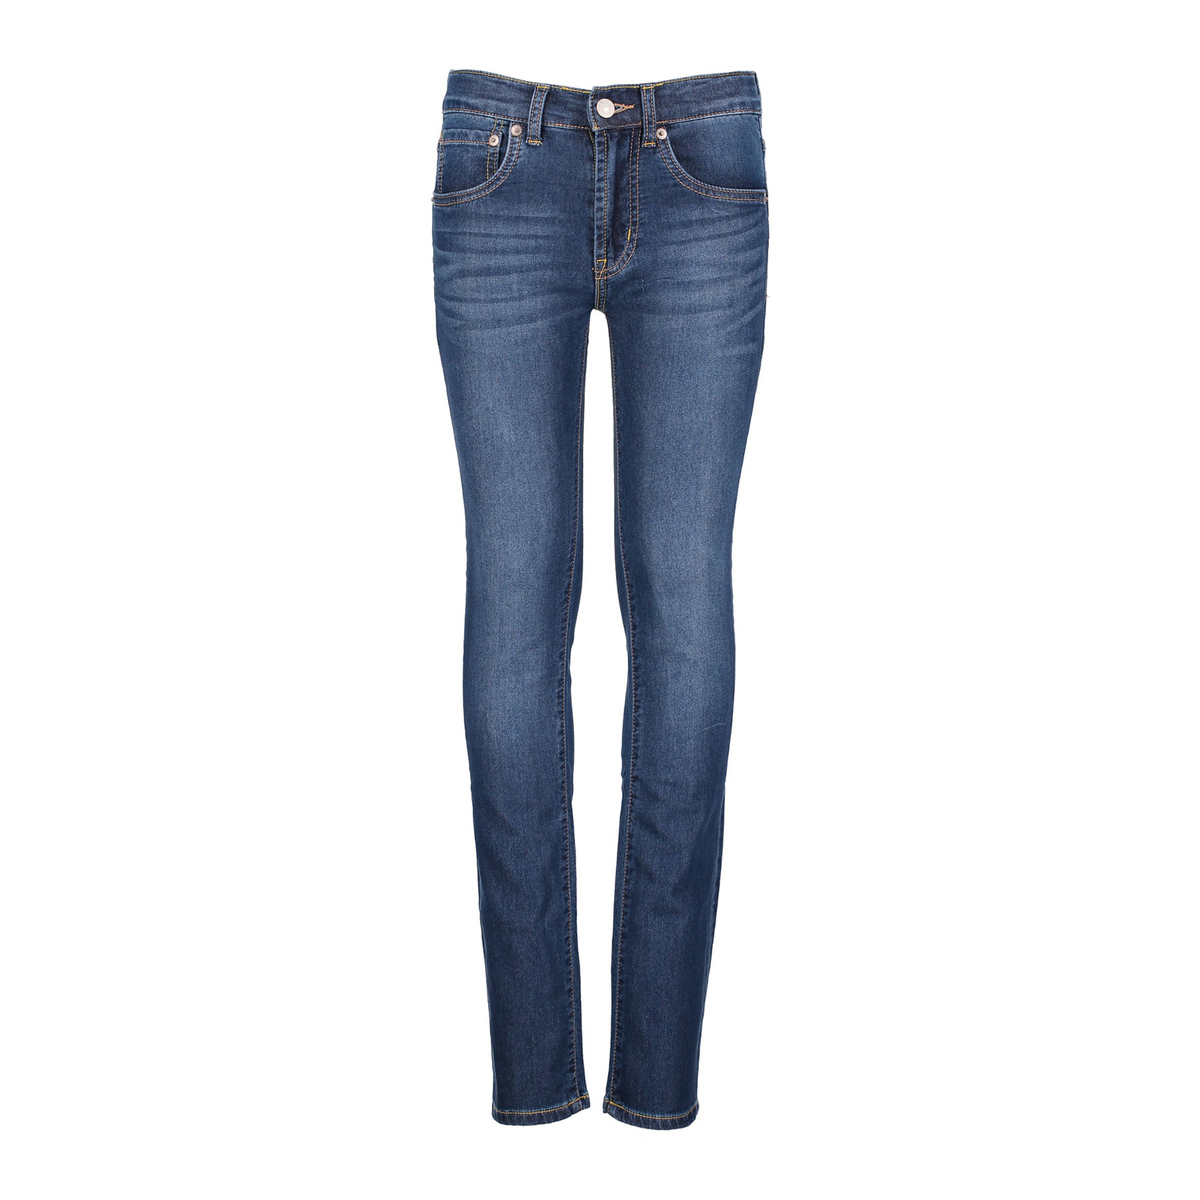 510 FELPATO bambino jeans skinny